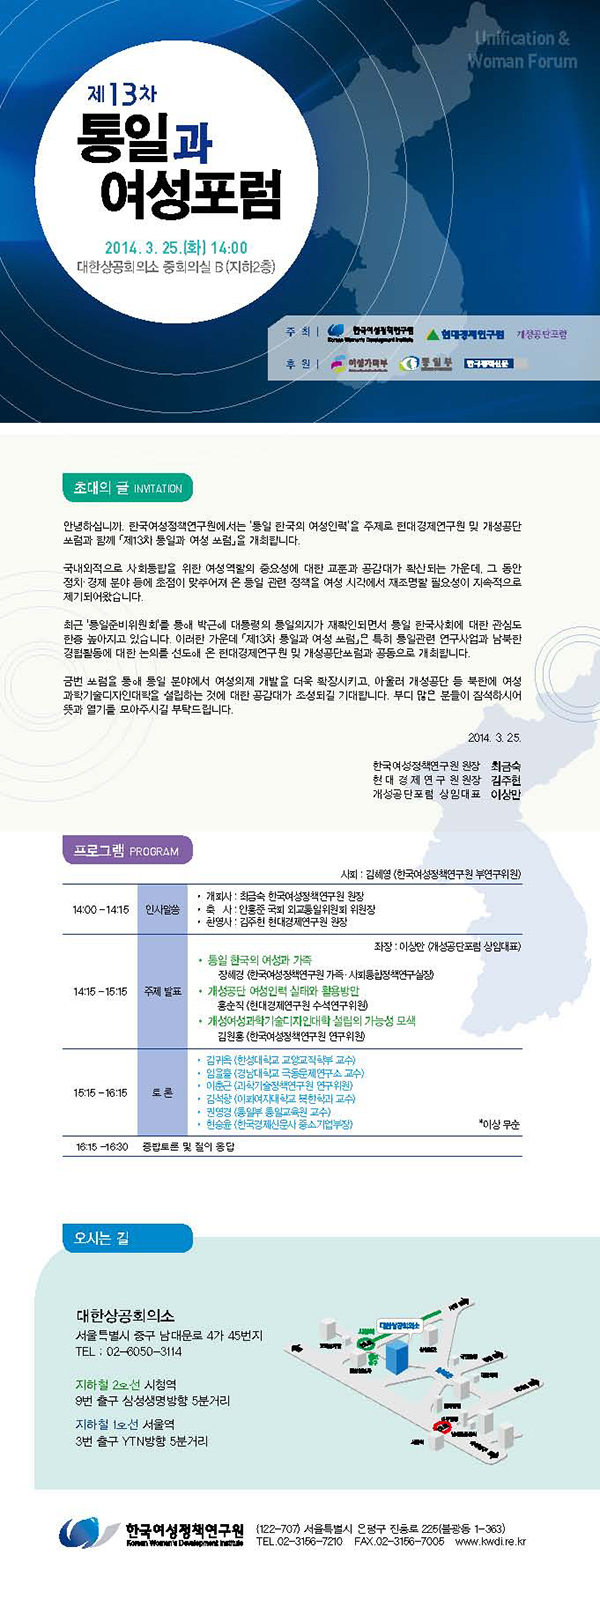 [제13차 통일과 여성포럼] 통일 한국의 여성인력 안내정보